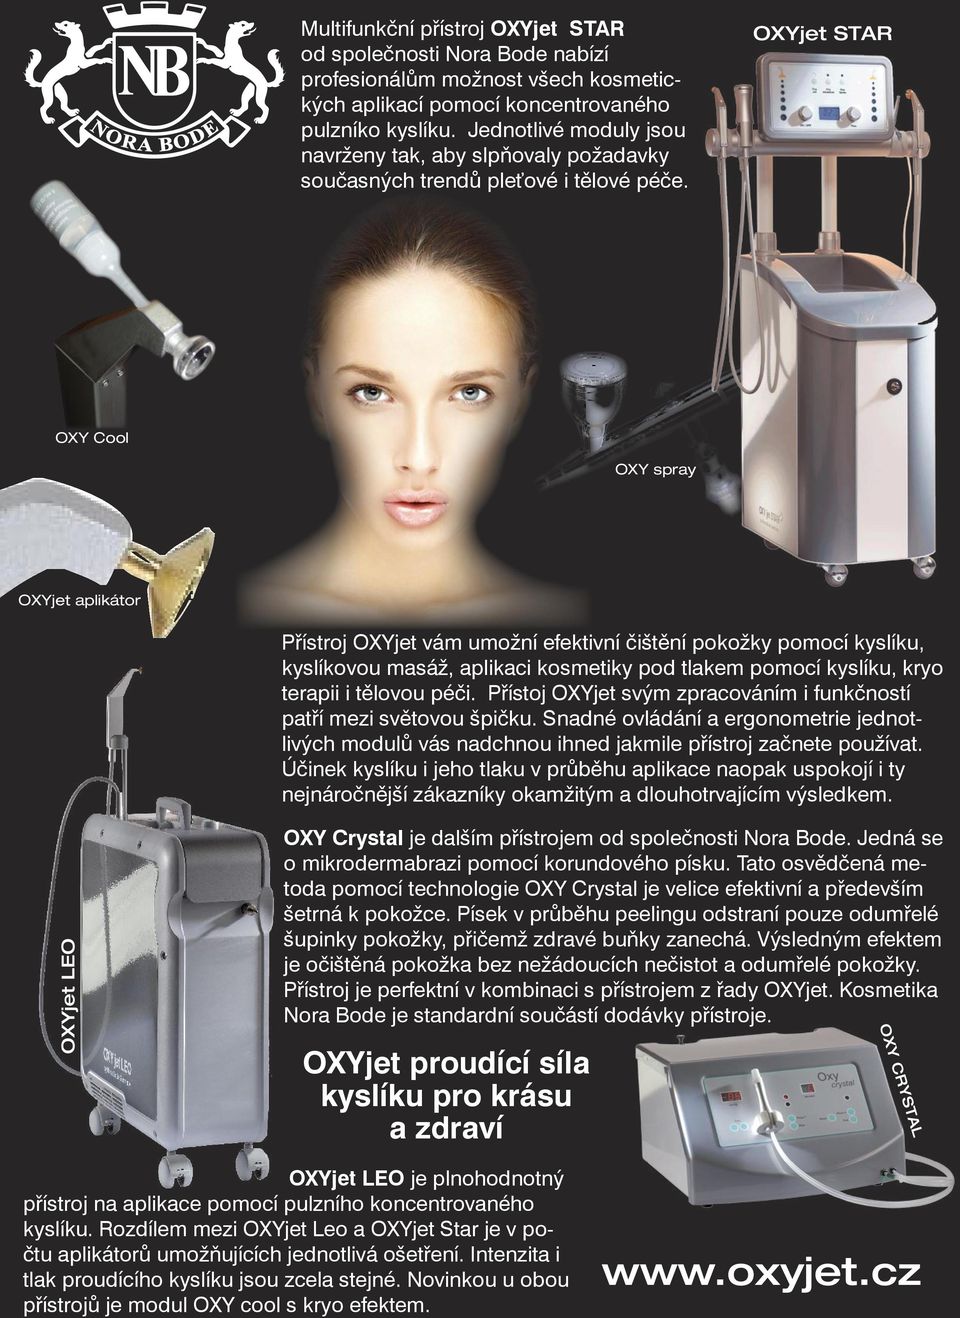 OXYjet STAR OXY Cool OXY spray OXYjet aplikátor Přístroj OXYjet vám umožní efektivní čištění pokožky pomocí kyslíku, kyslíkovou masáž, aplikaci kosmetiky pod tlakem pomocí kyslíku, kryo terapii i